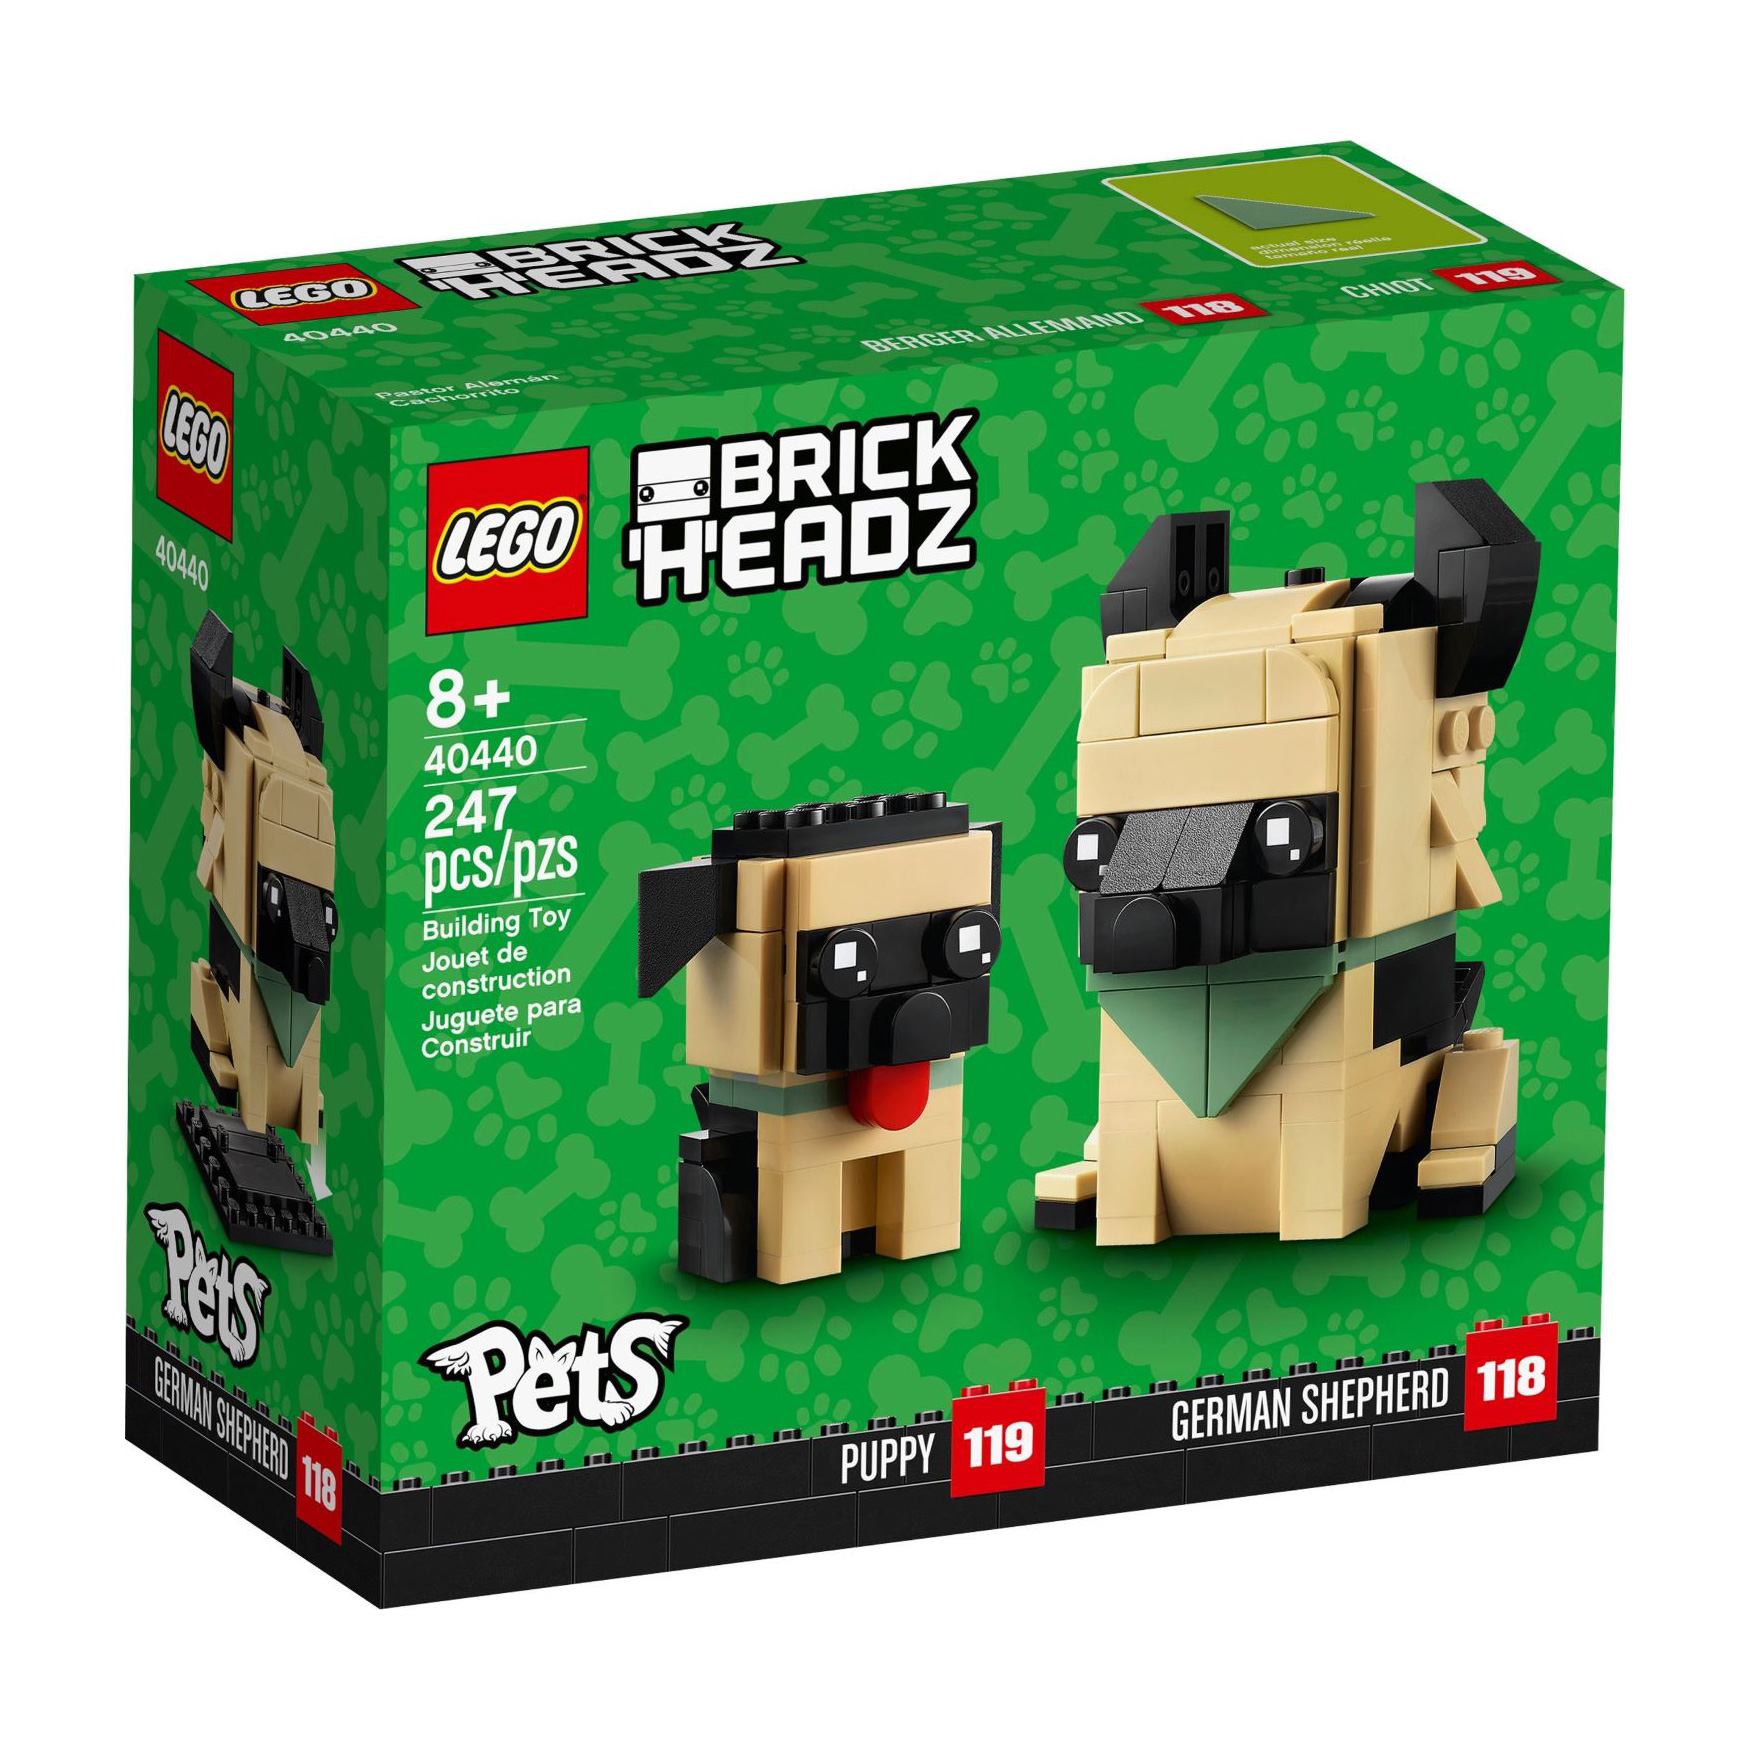 LEGO® BrickHeadz 40440 Deutscher Schäferhund günstig kaufen | brickstore.at